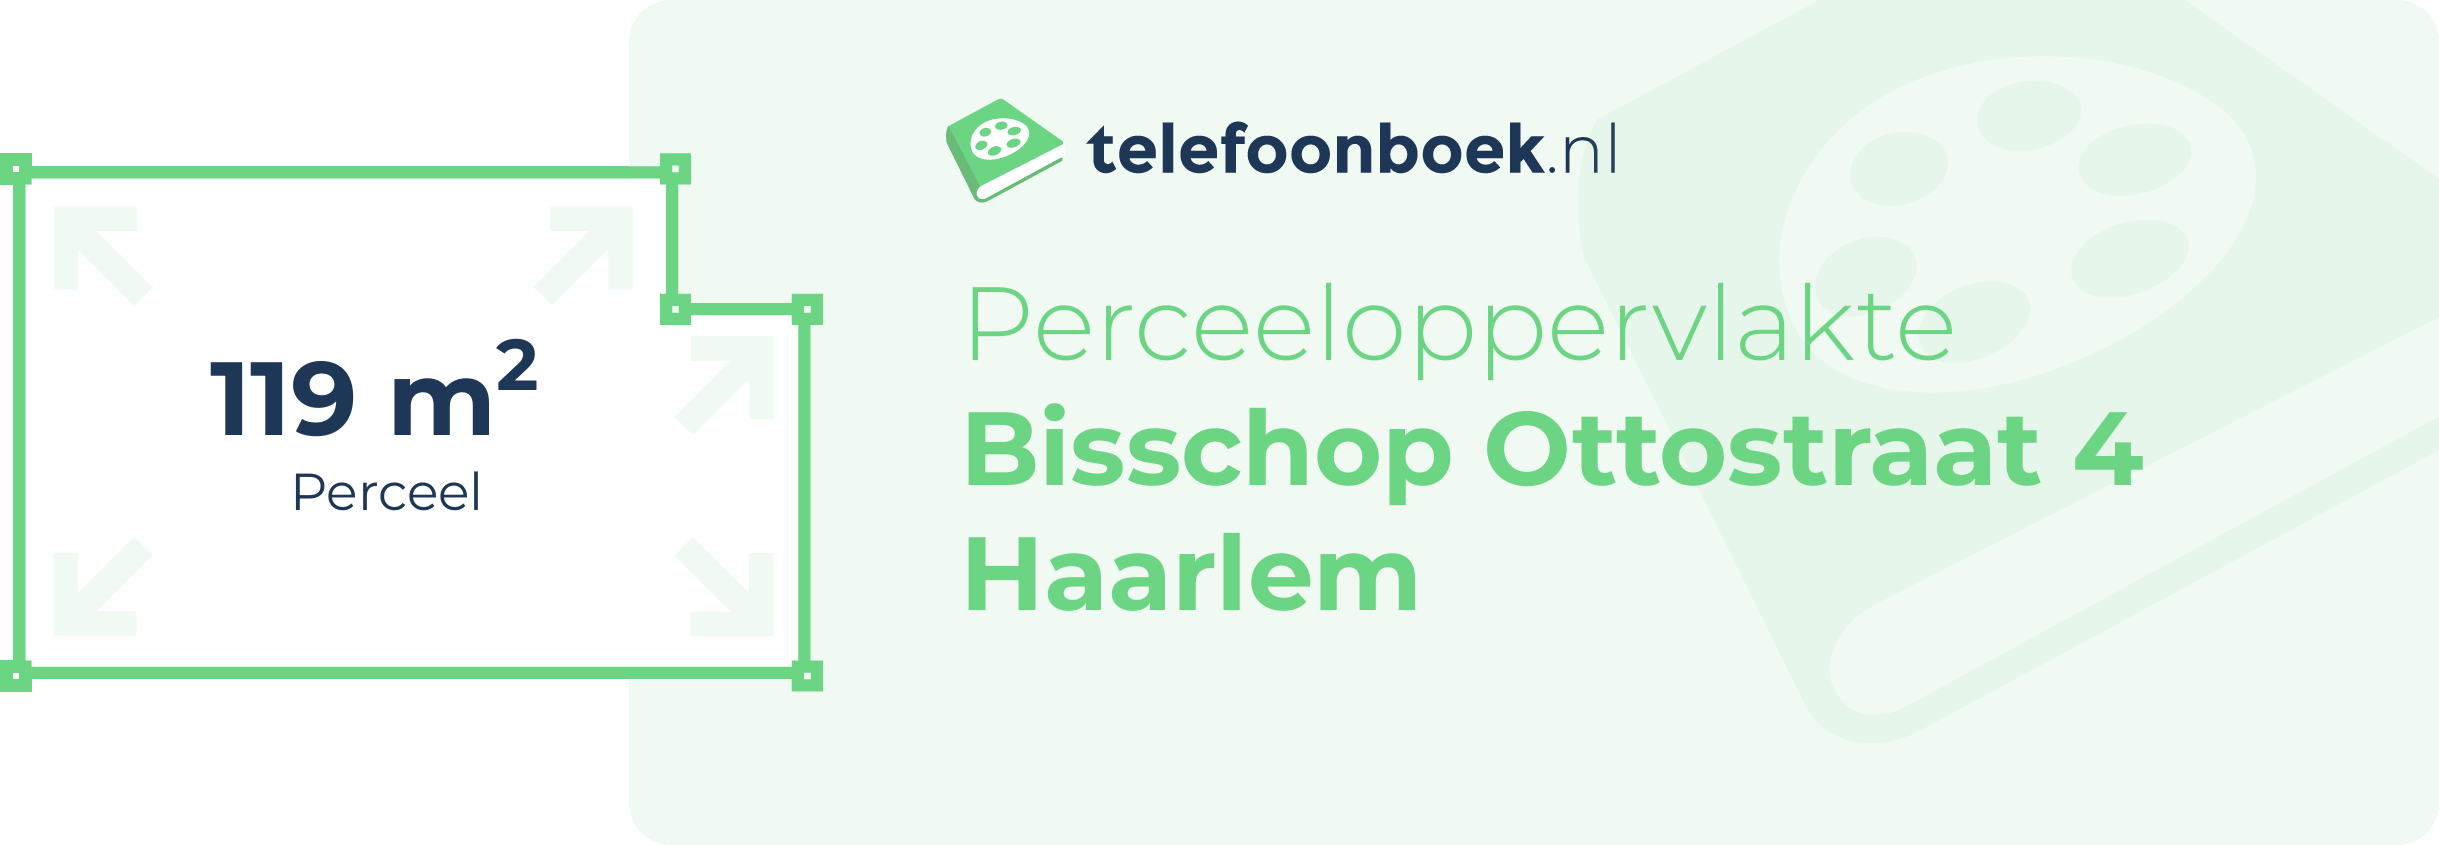 Perceeloppervlakte Bisschop Ottostraat 4 Haarlem